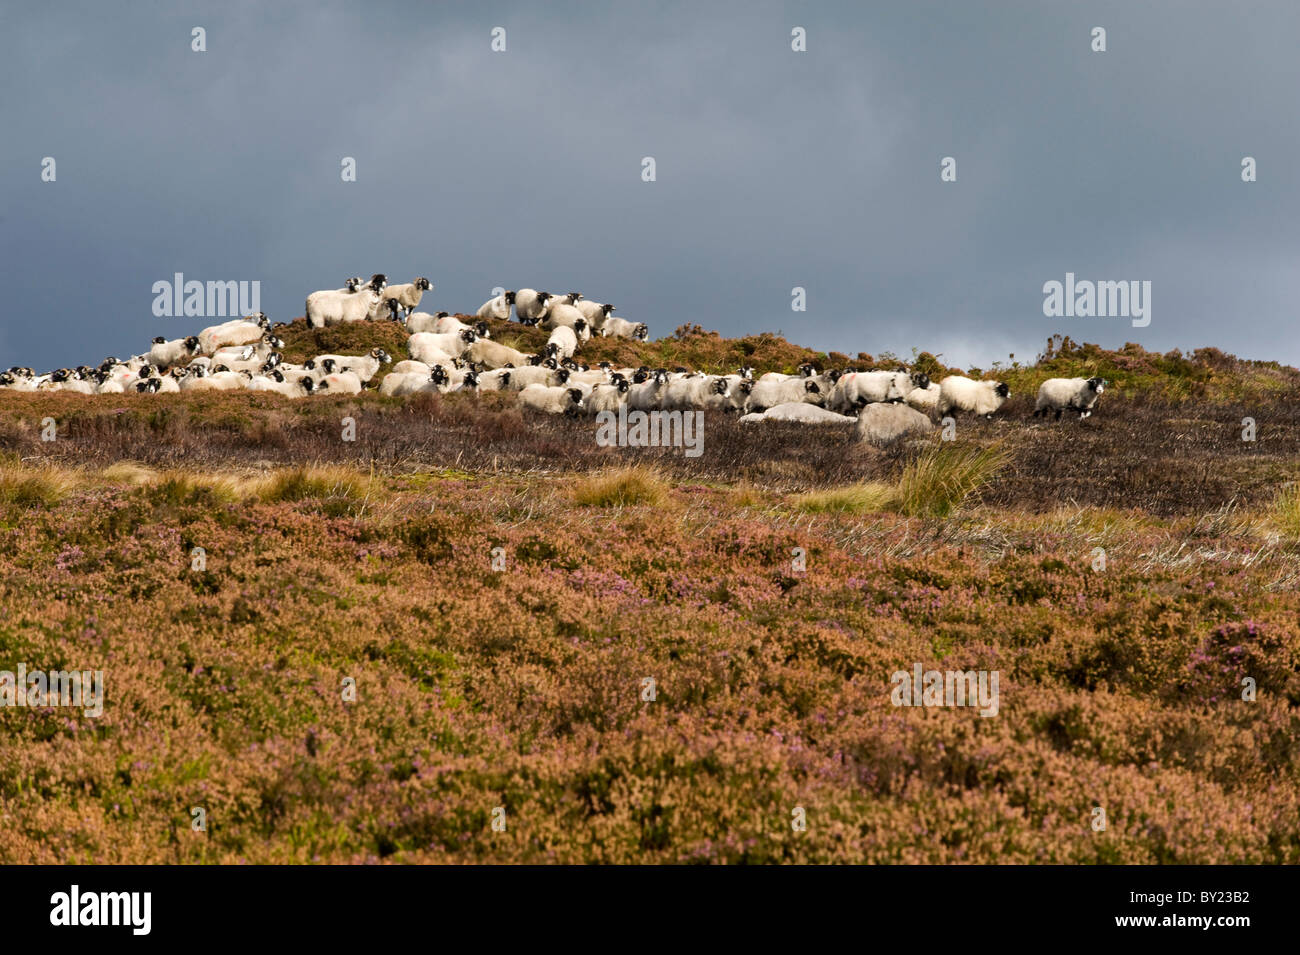 UK; Yorkshire, Bingley and Ilkley Moor.  Sheep skylined amongst the heather on an upland moor. Stock Photo